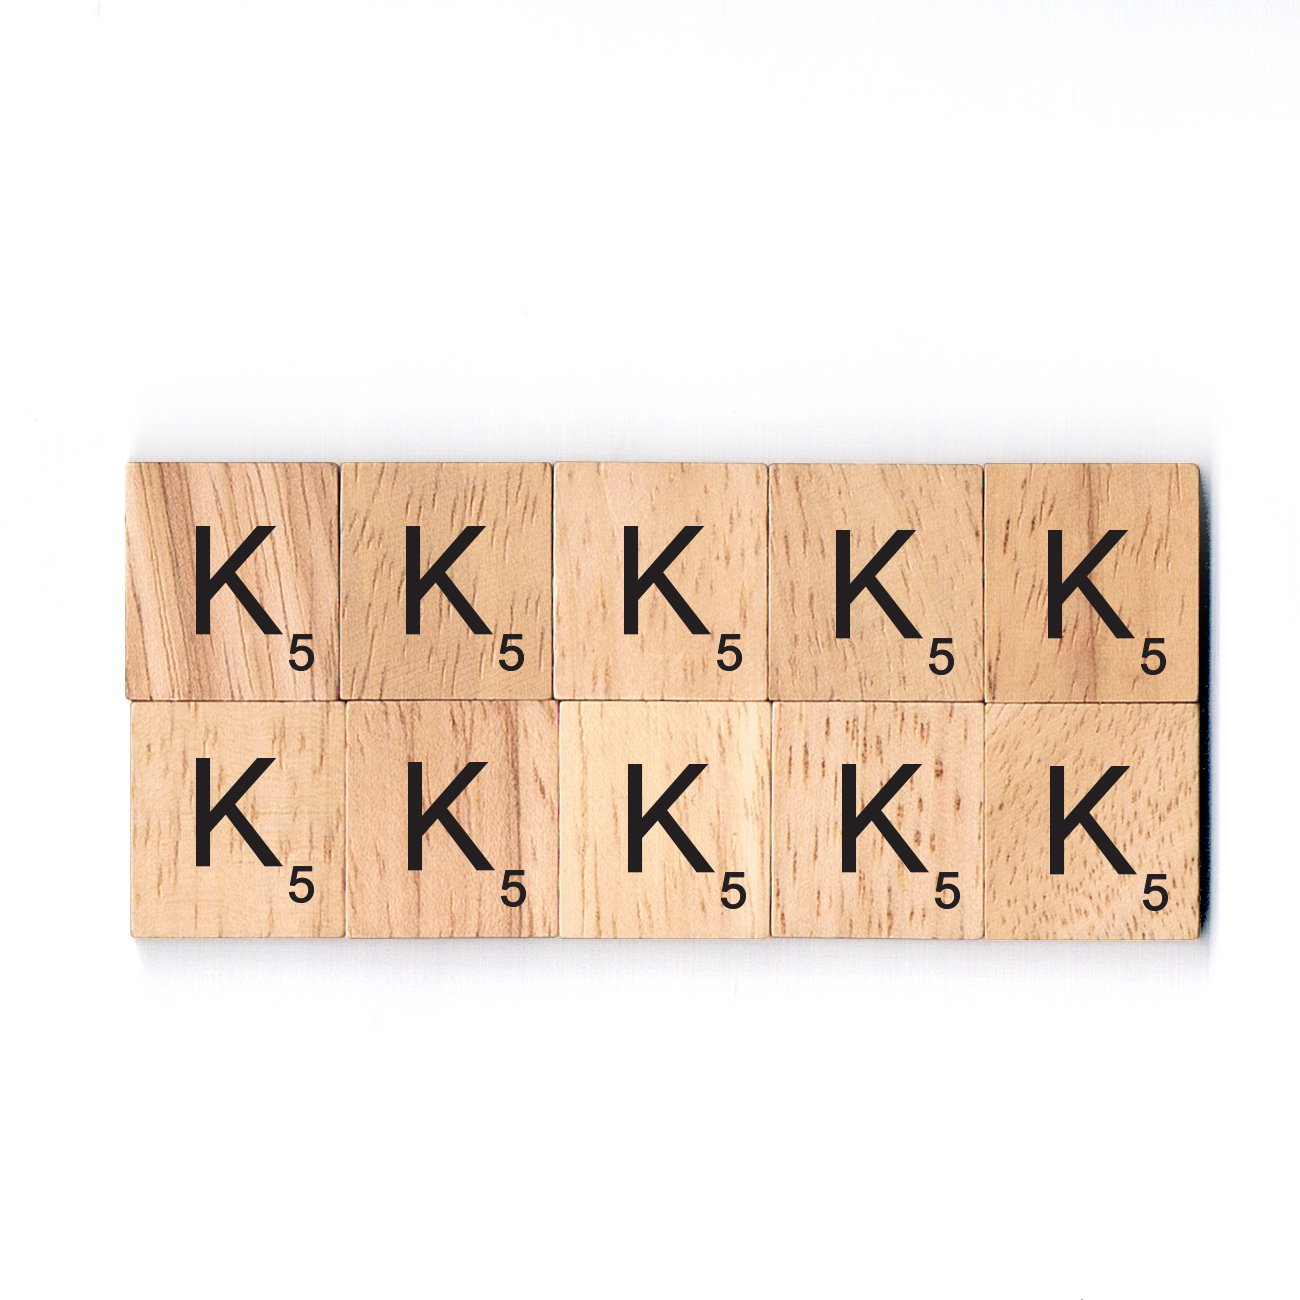 Bag Of 100 Scrabble Tiles All LETTER K 